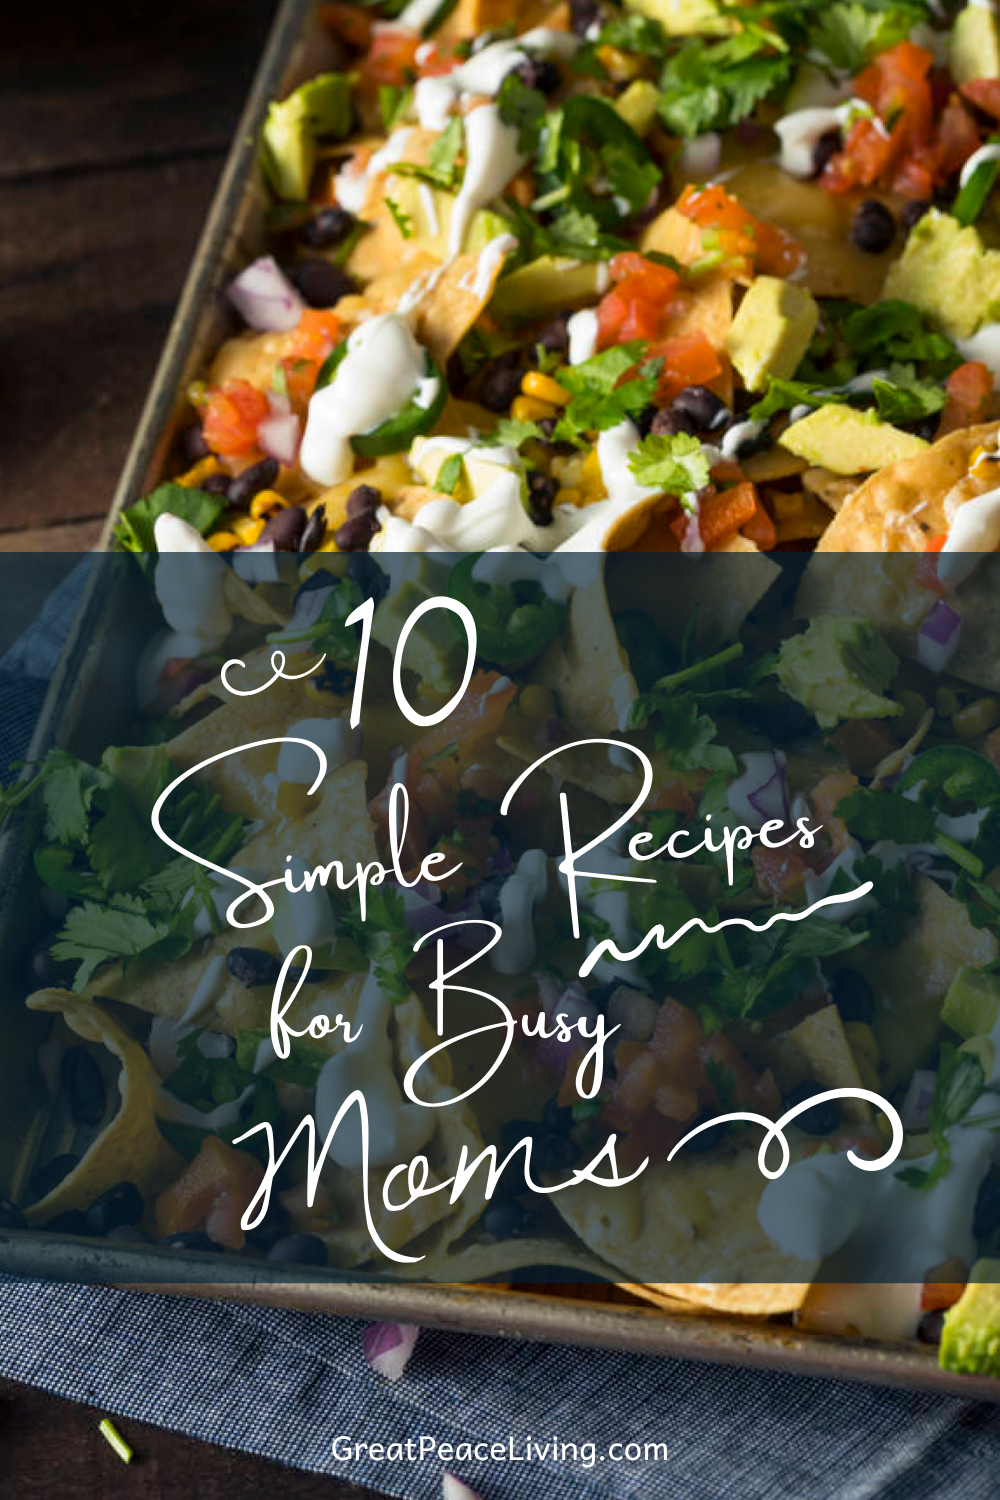 10 Simple Recipes for Busy Moms | GreatPeaceLiving.com #mealplanning #homemaker #dinner #whatsfordinner